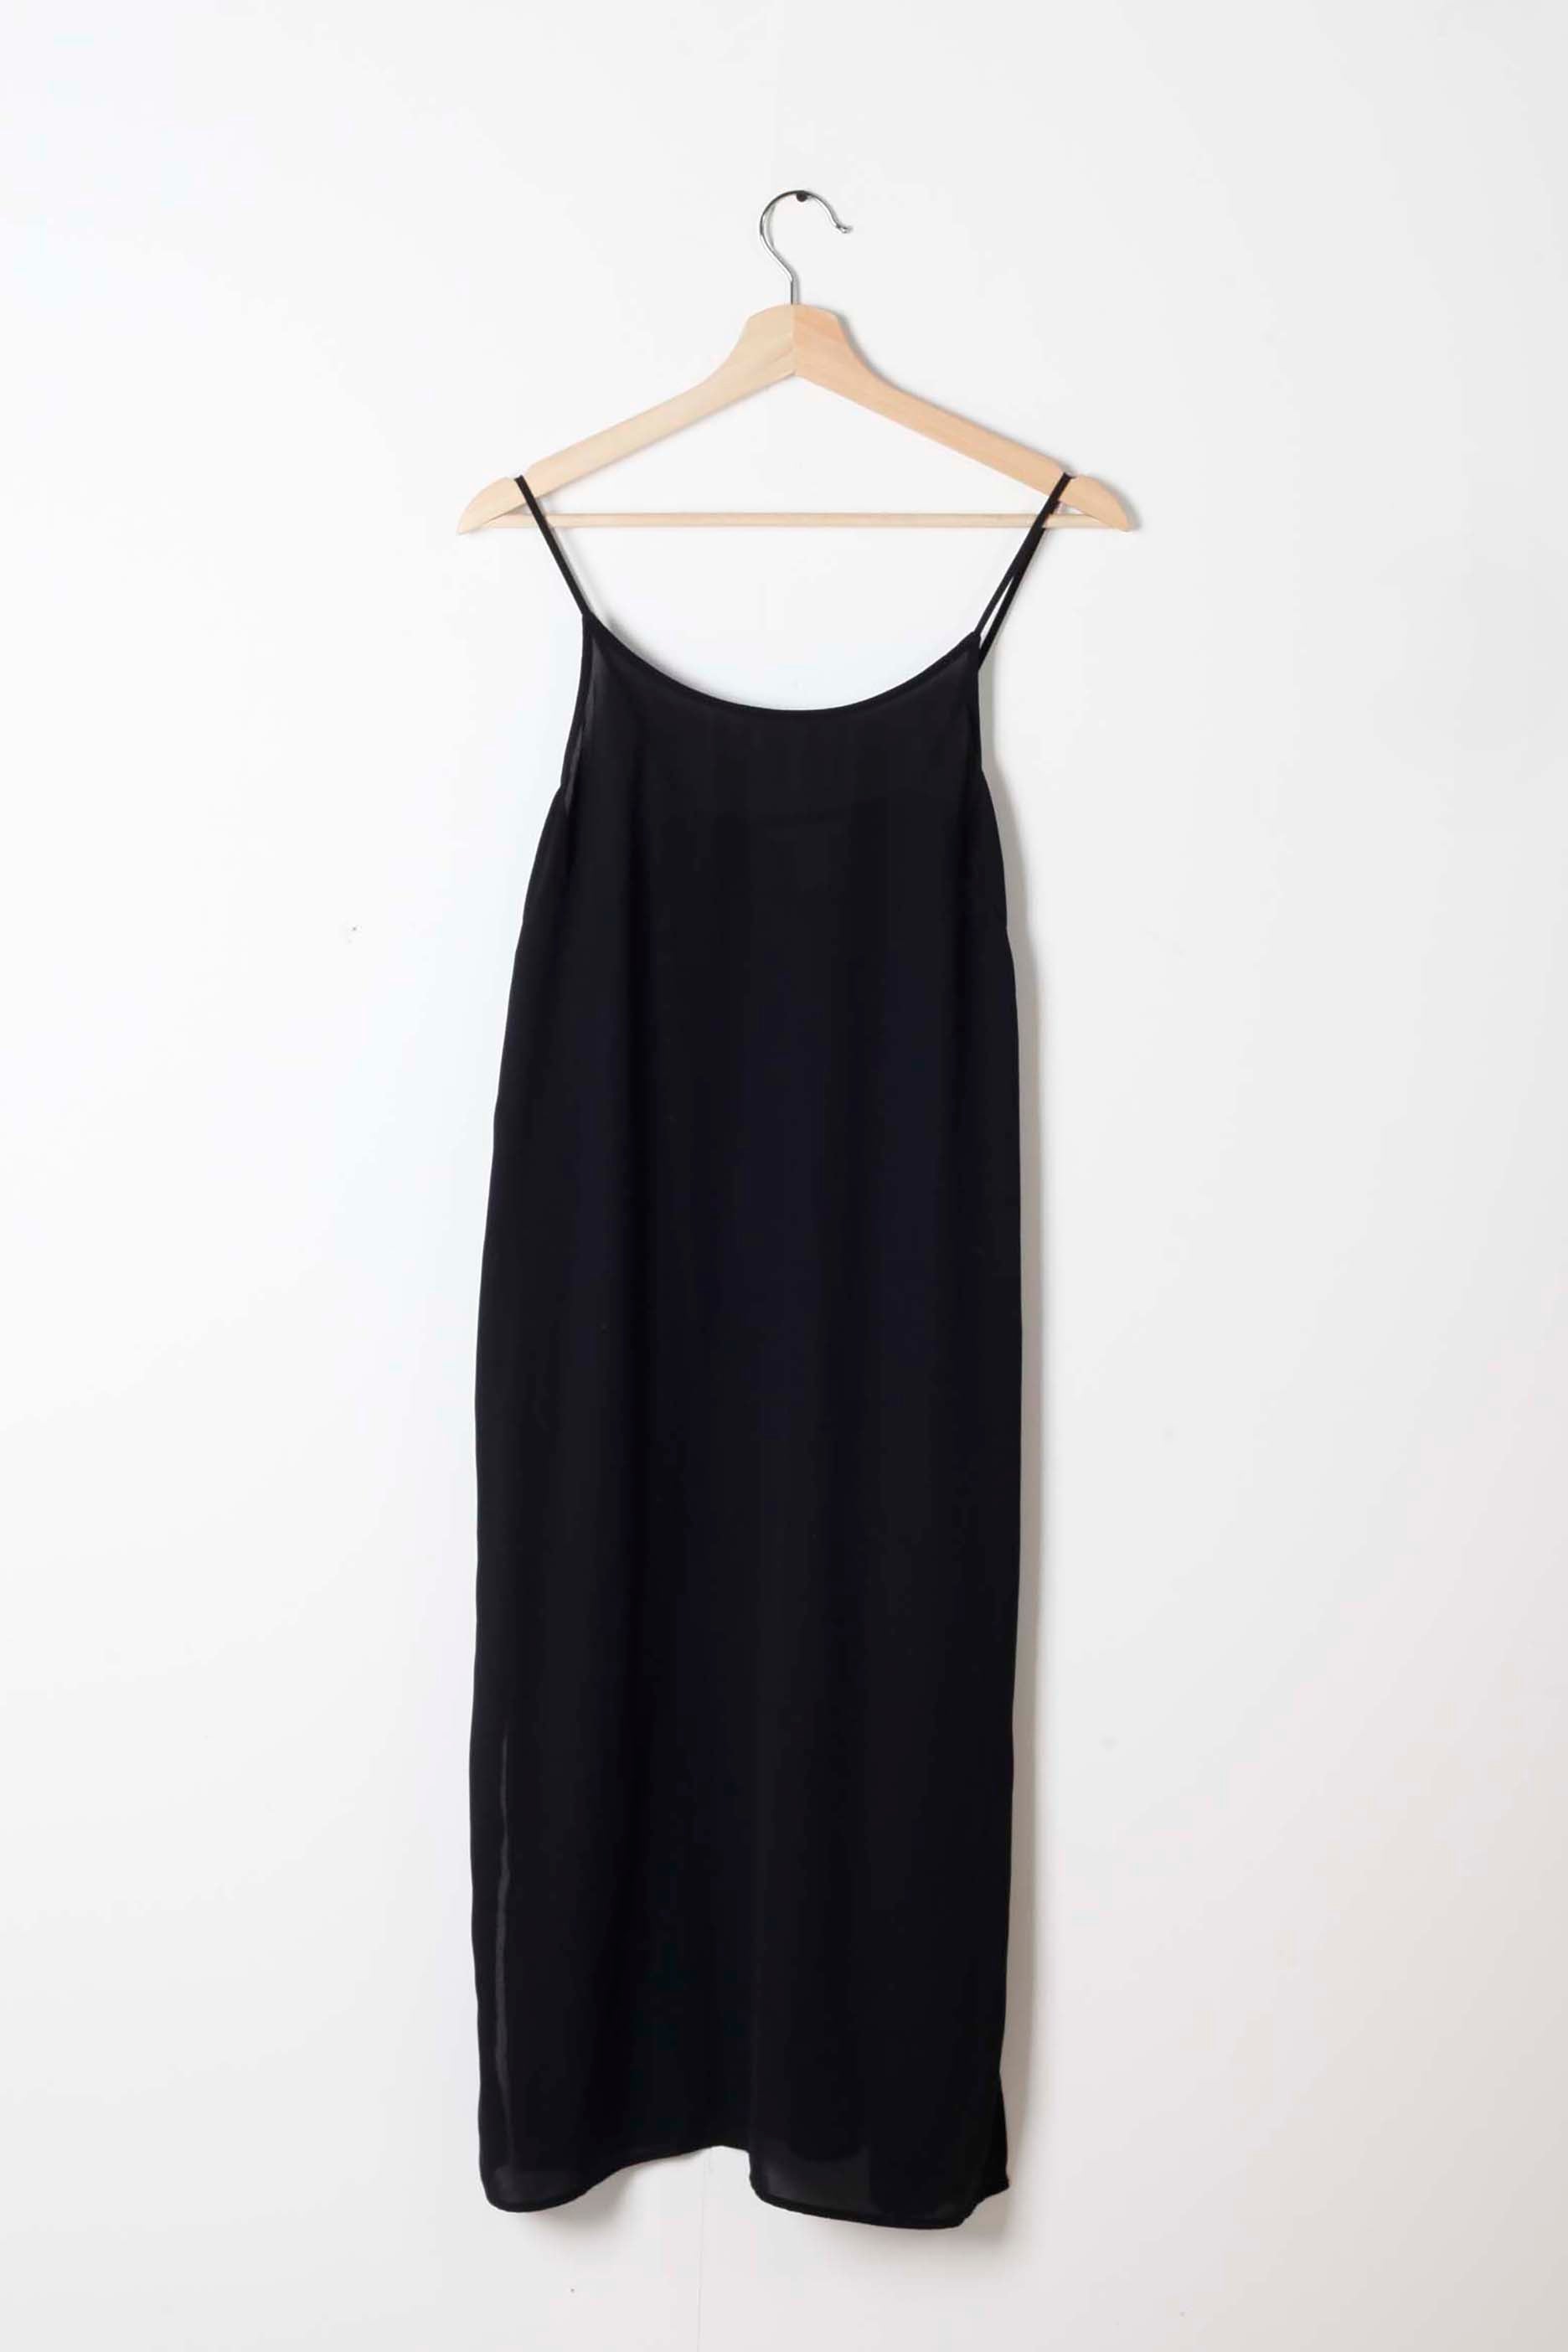 Black Midi Slip Dress (Eu38)